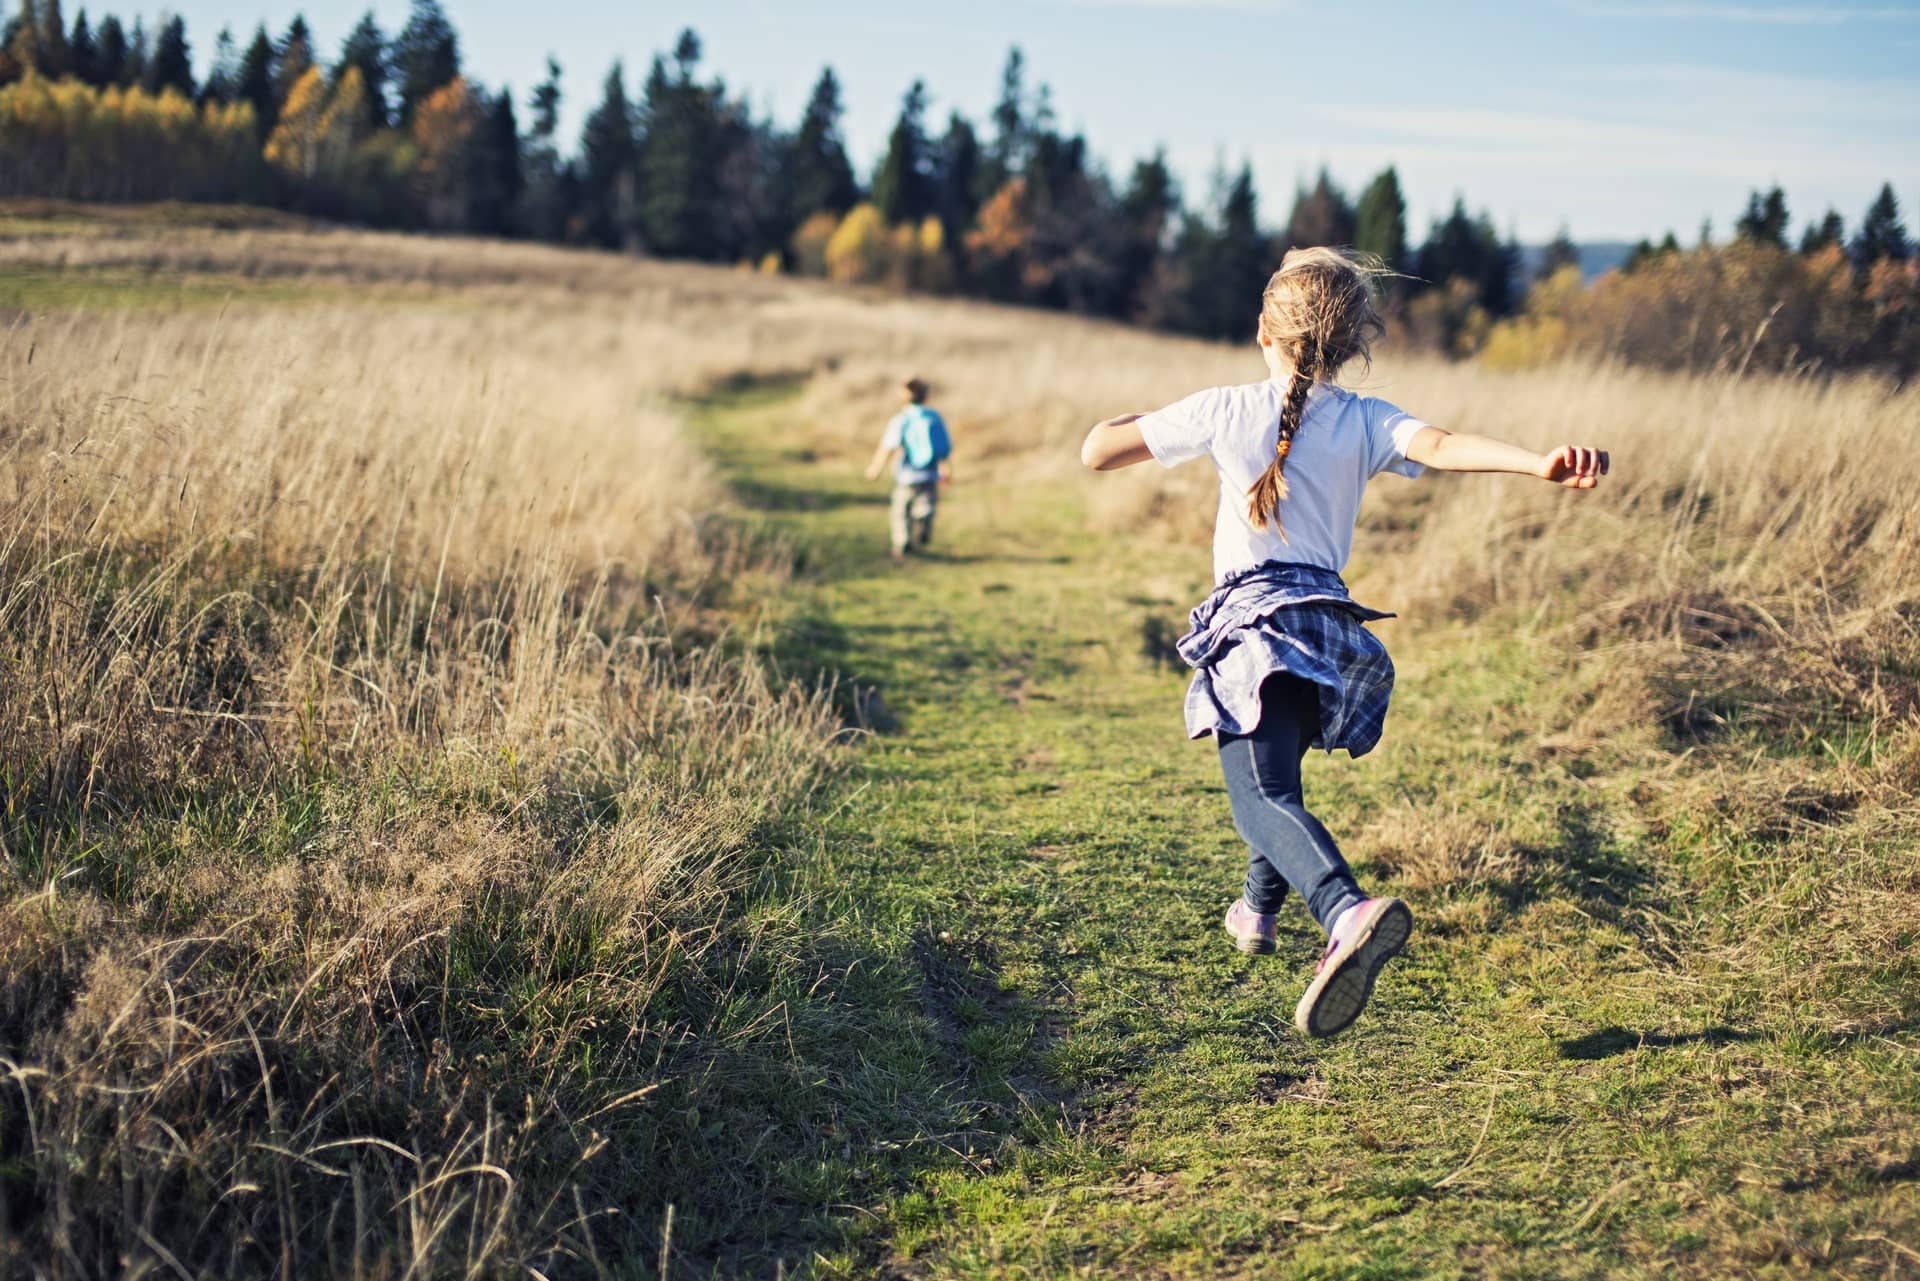 Kids skipping through a field